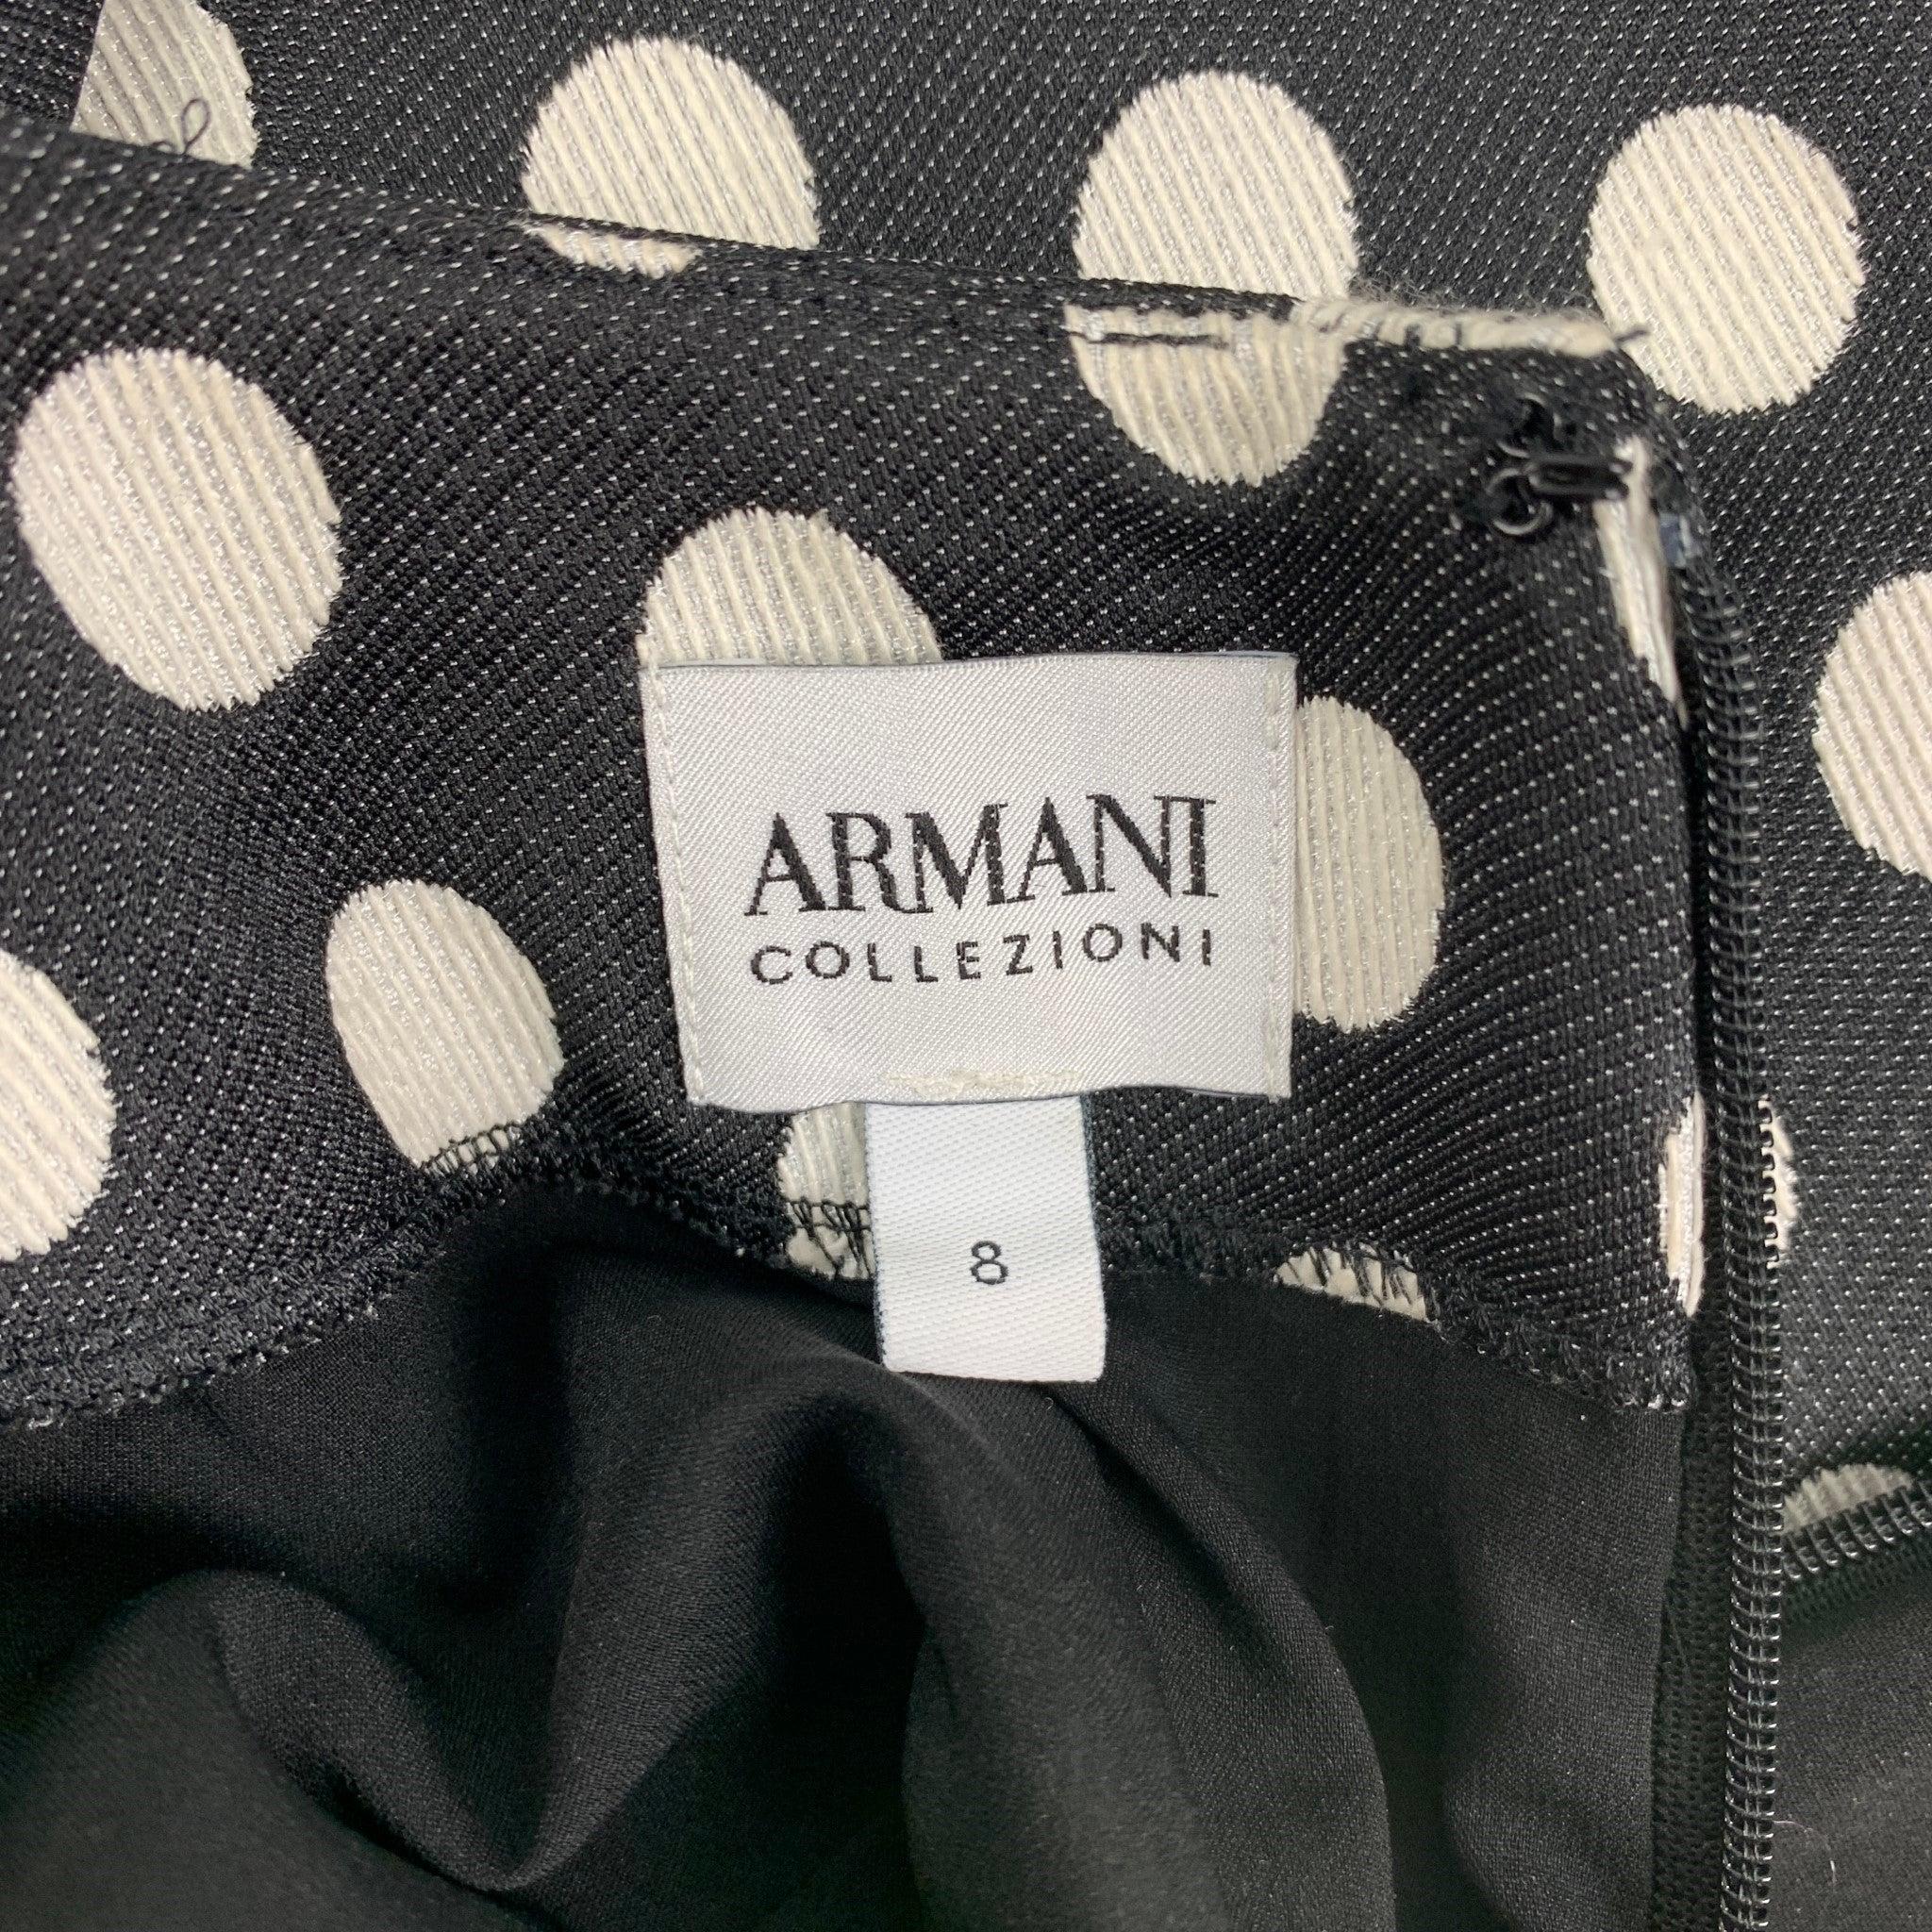 ARMANI COLLEZIONI Size 8 Black & White Polka Dot Sheath Dress For Sale 1